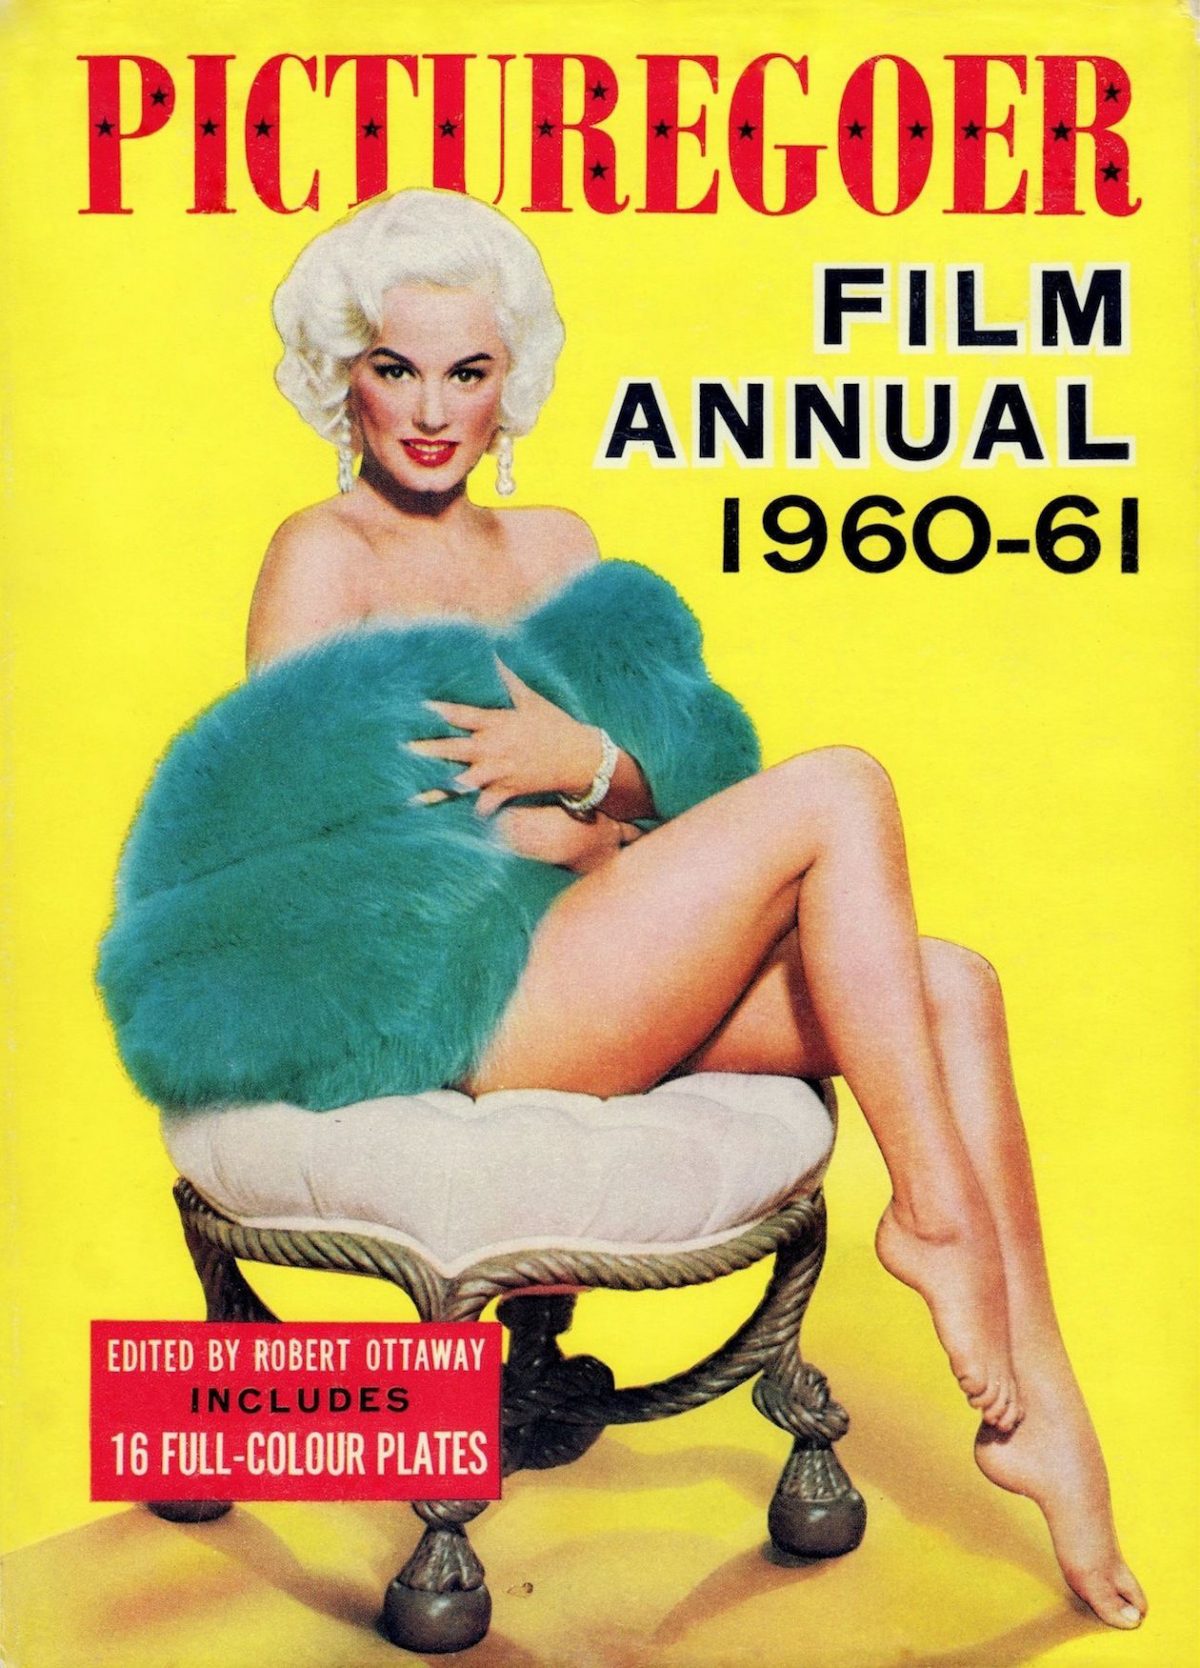 Mamie Van Doren, film star, model